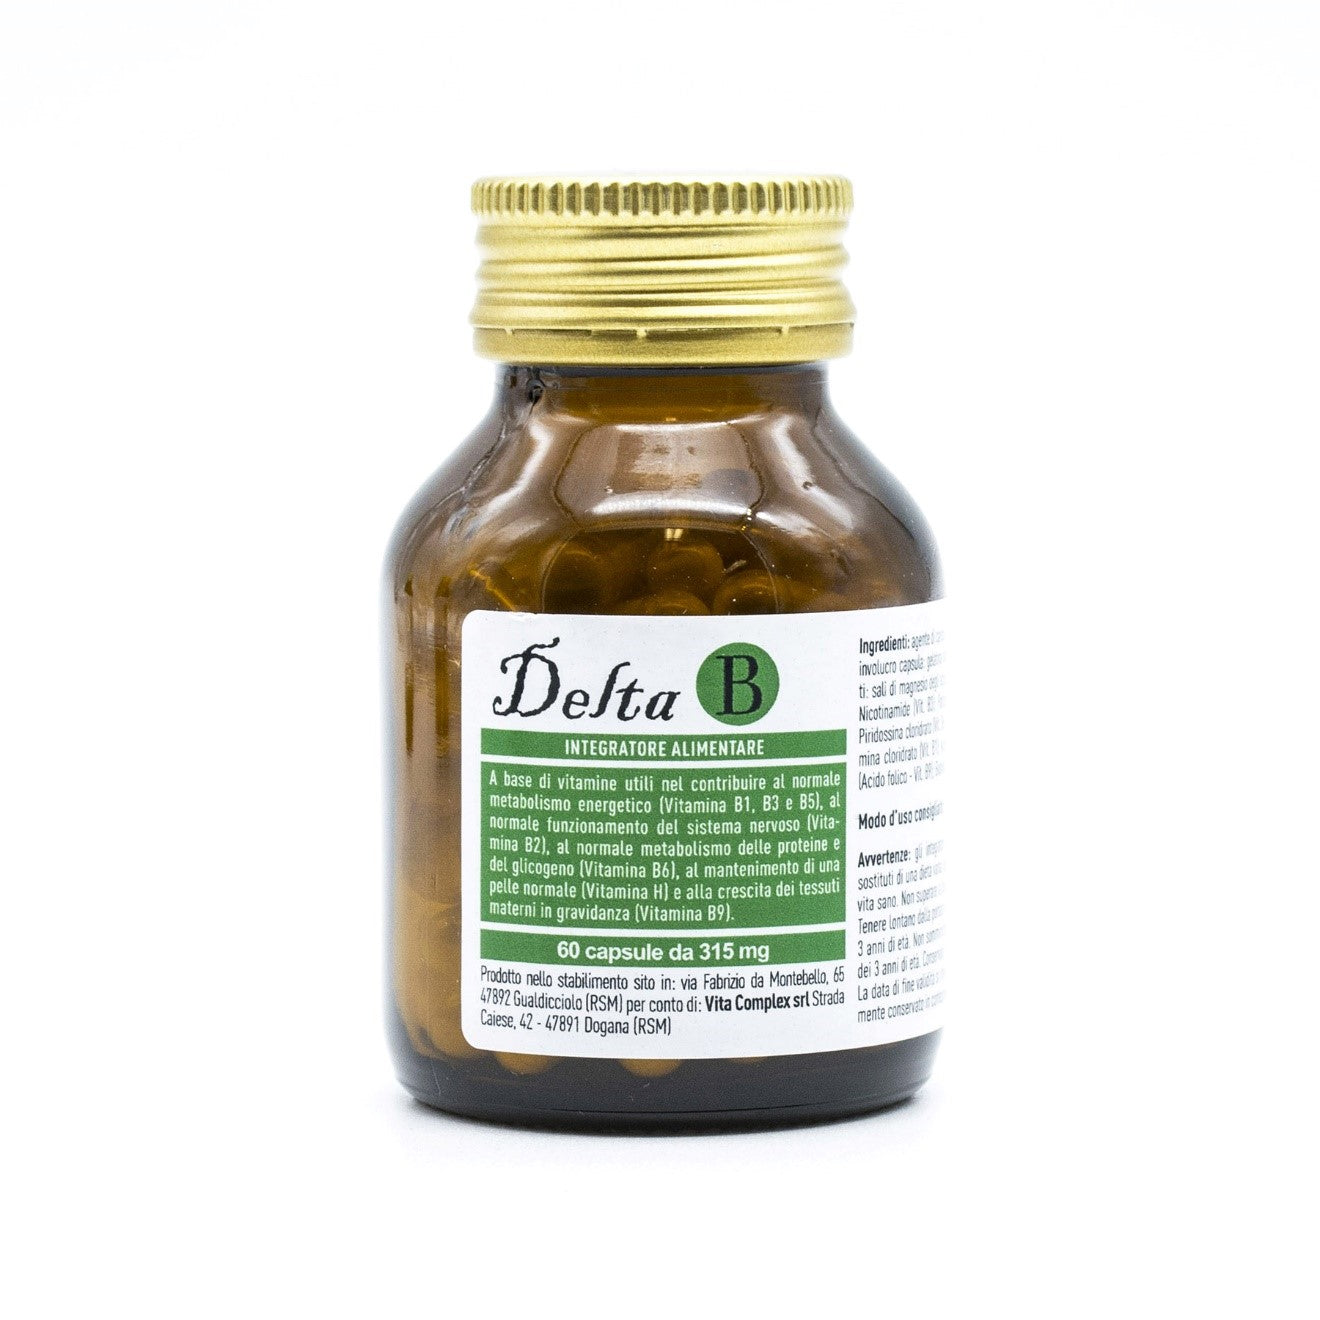 Flacon de Delta B | Vita Complex pour un apport en vitamines du groupe B